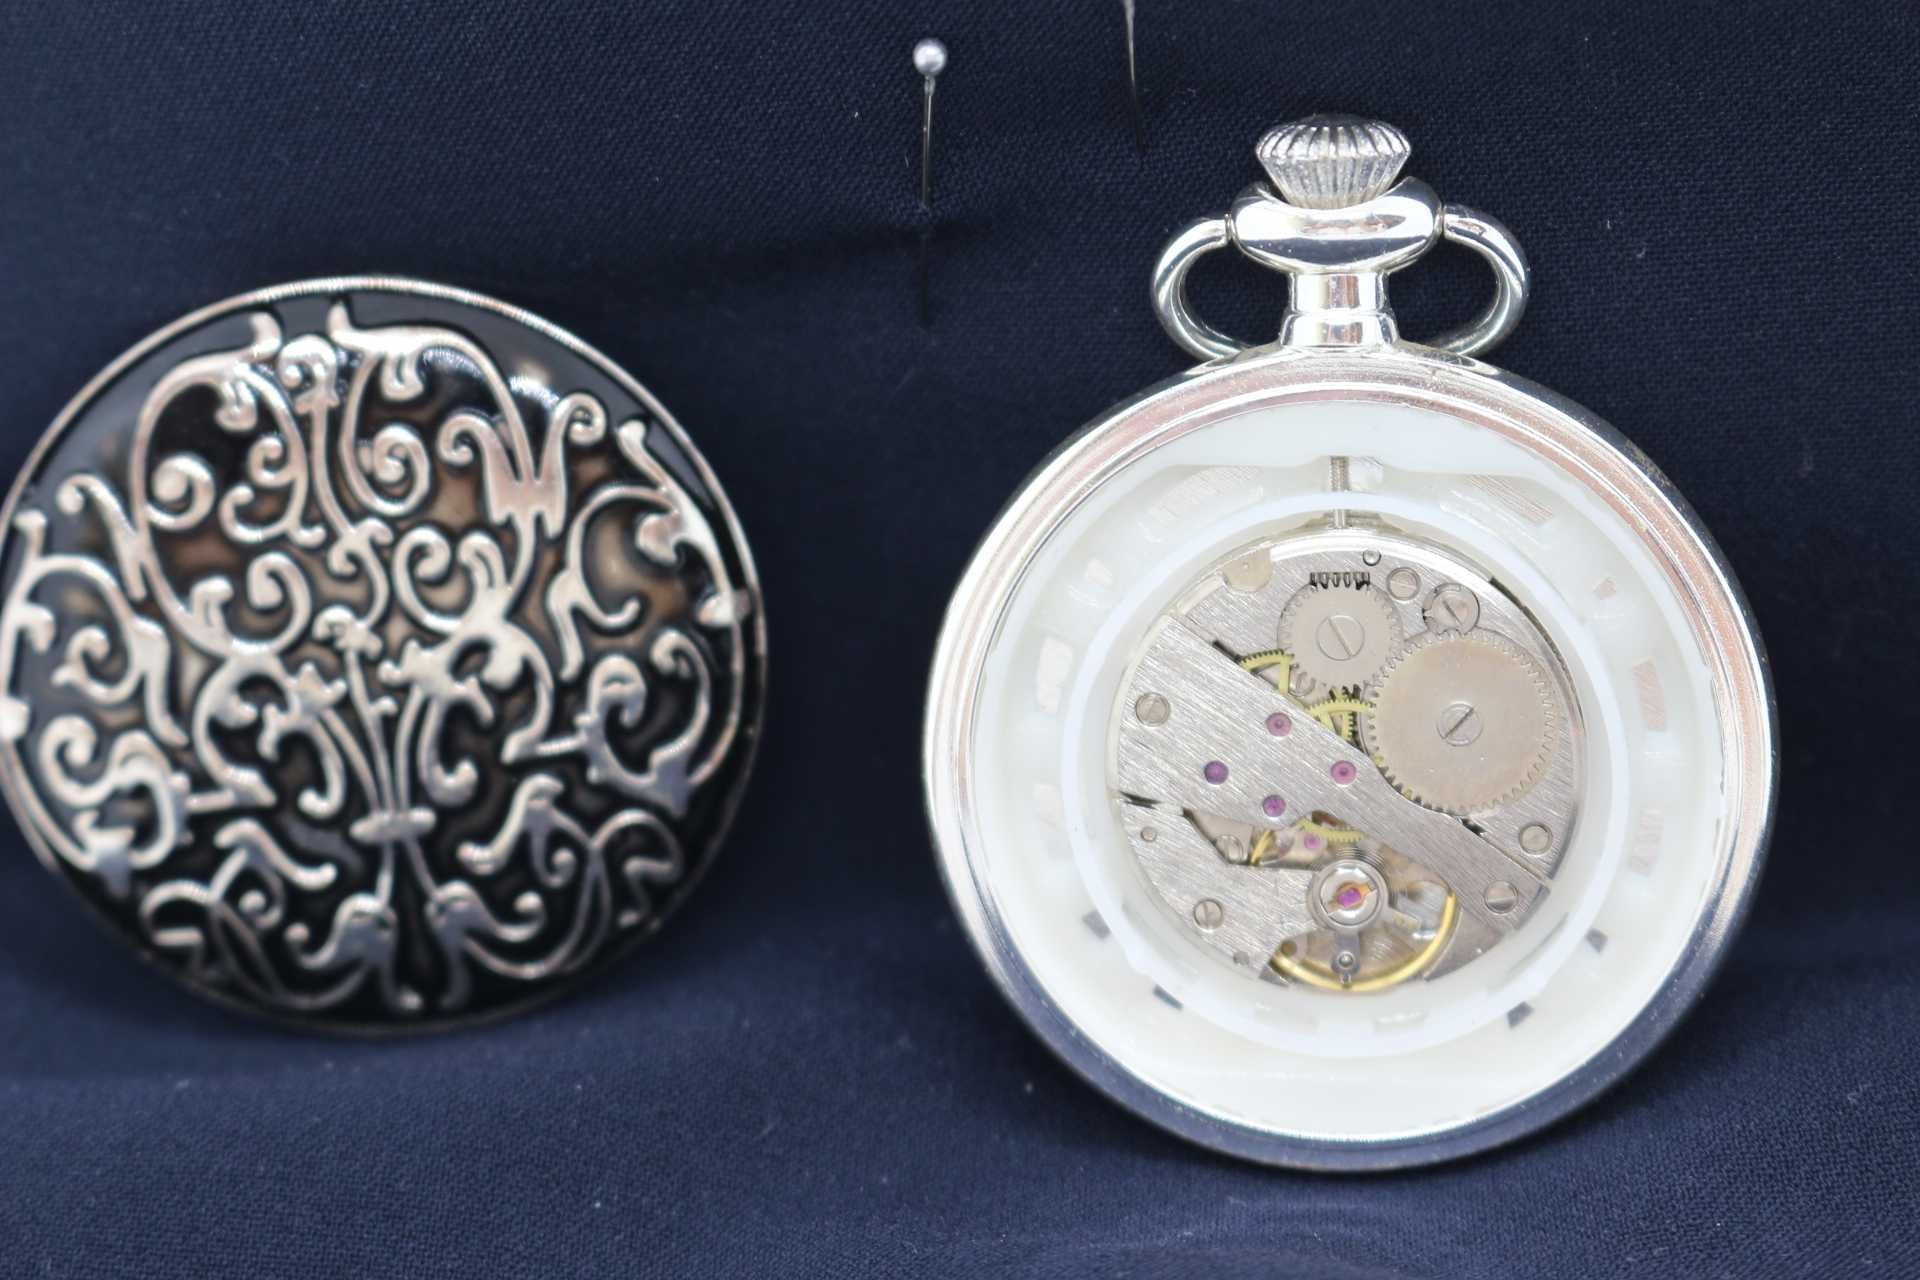 Relógios de Bolso - The Heritage Collection - Cité - Edição 11